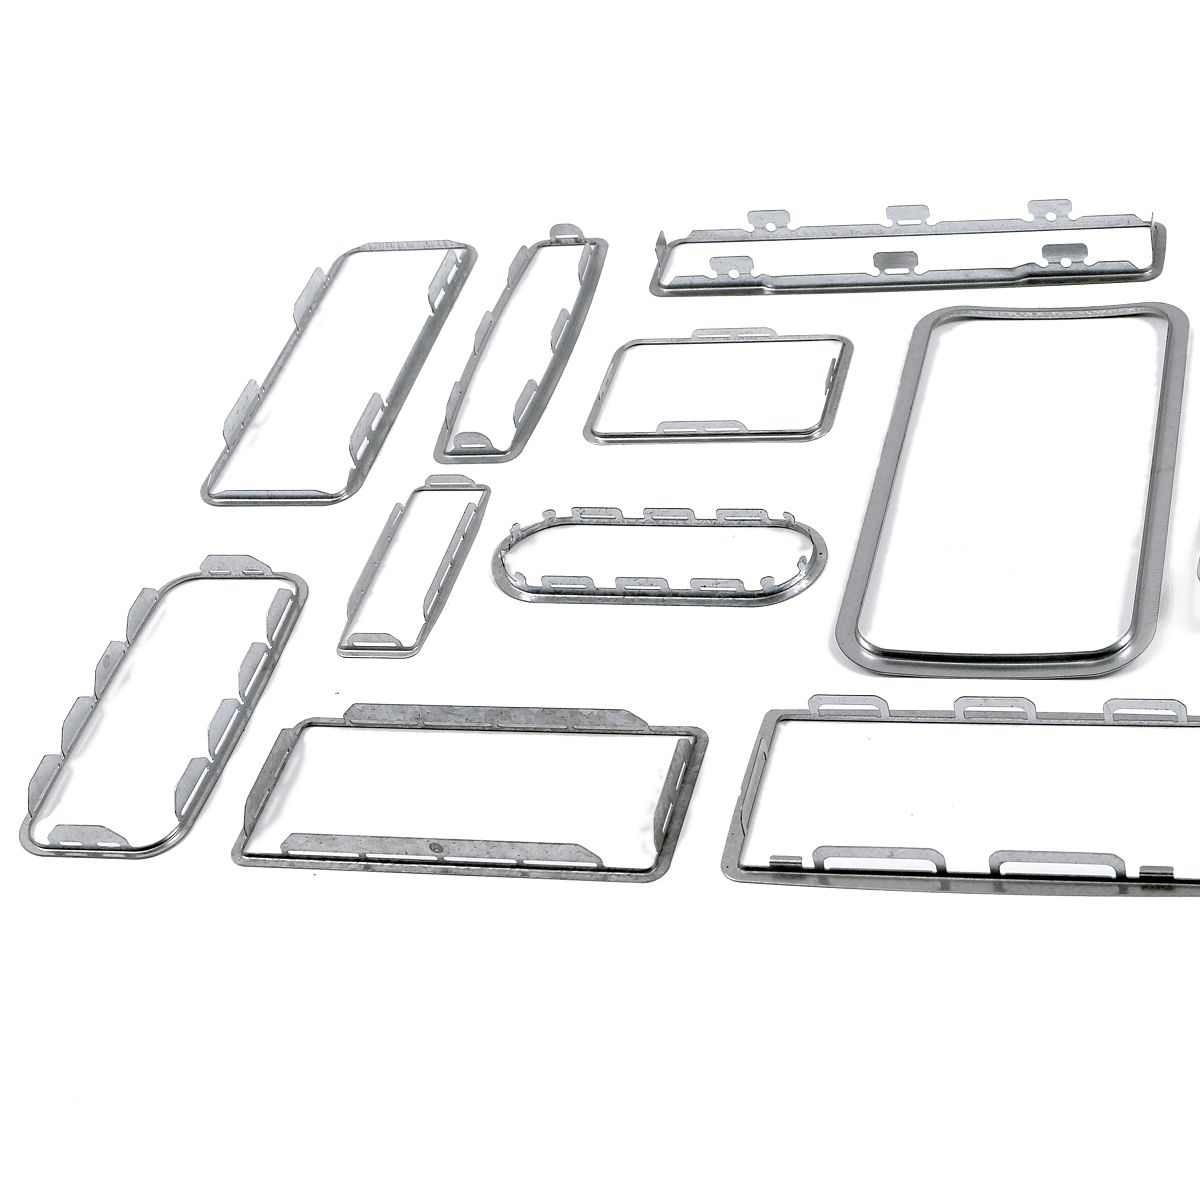 marcos - Aceros de alta resistencia o aceros de alto límite elástico